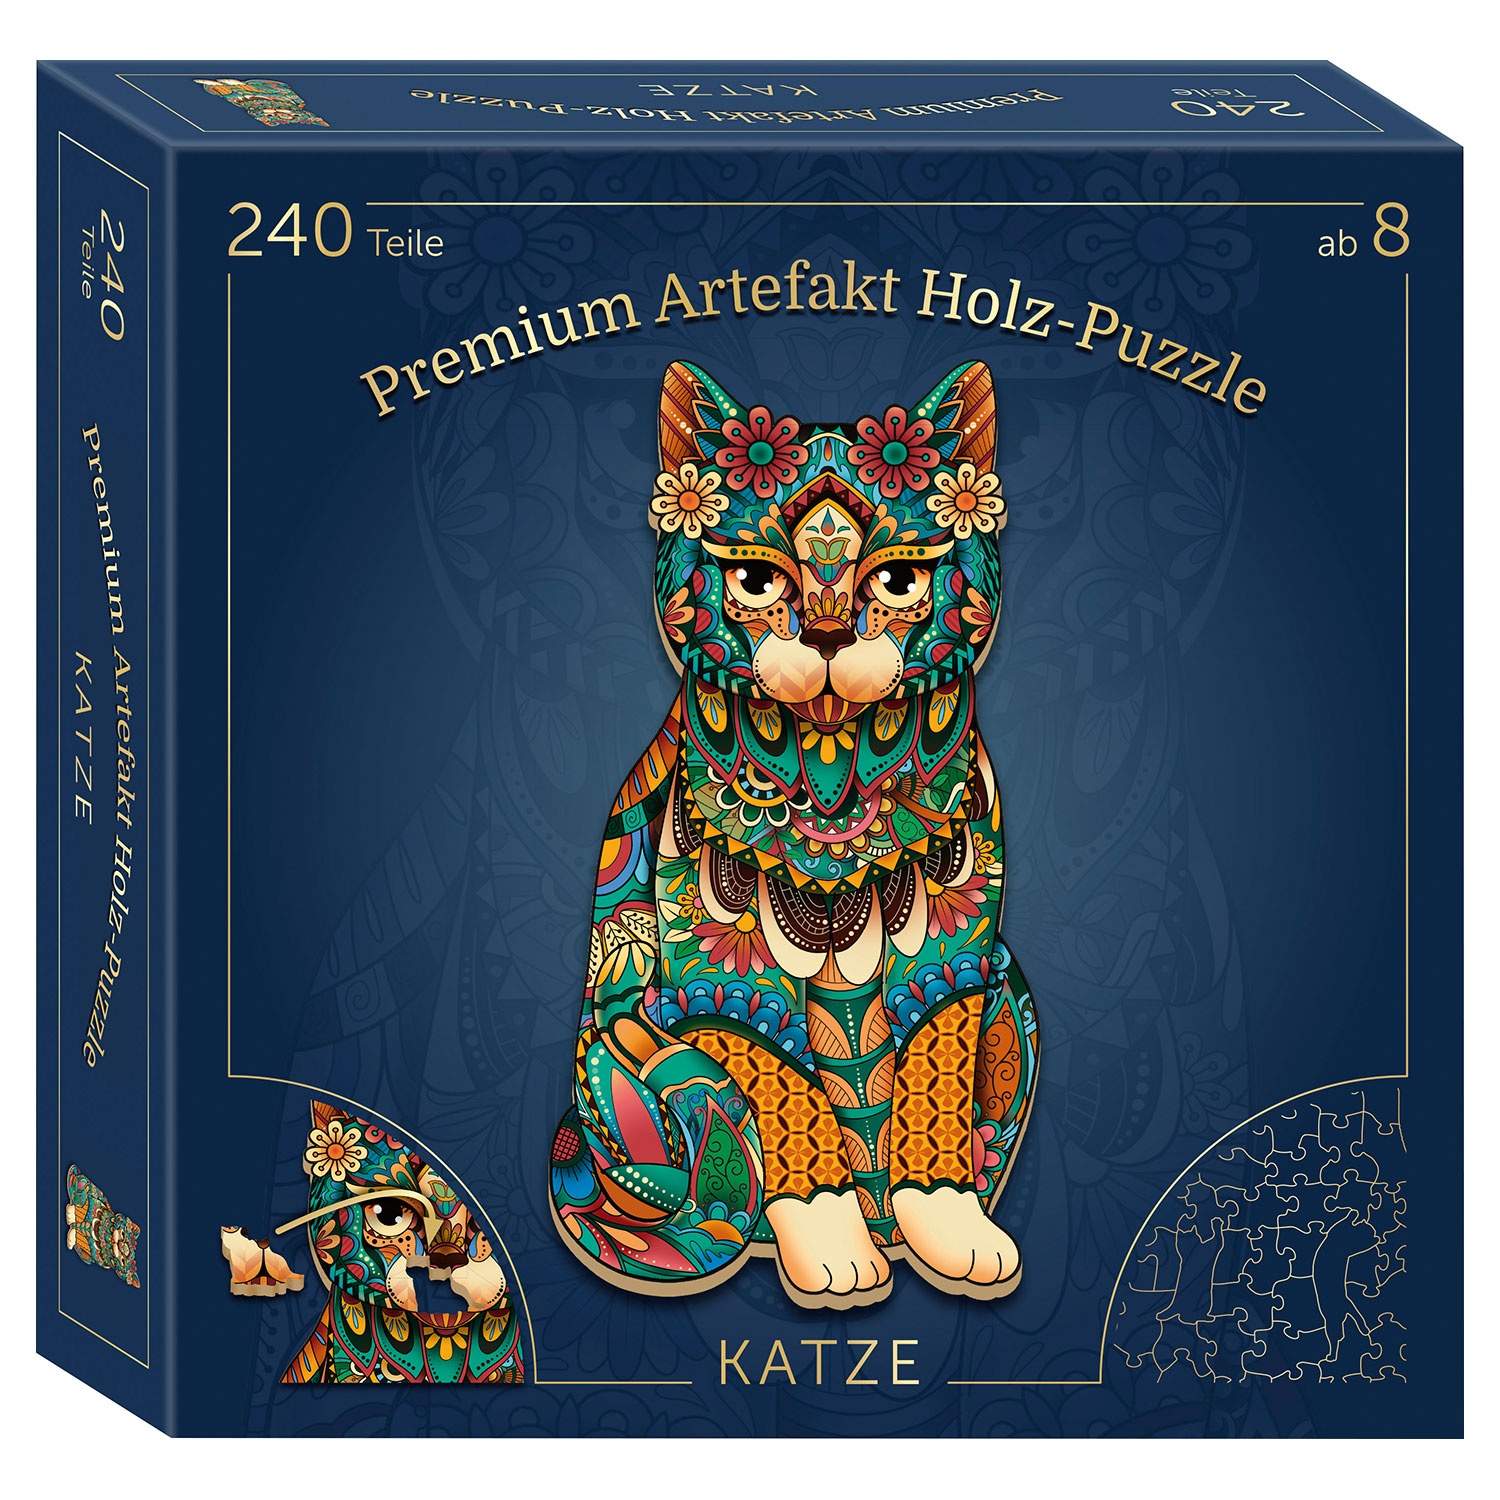 Premium-Artefakt-Holz-Puzzle